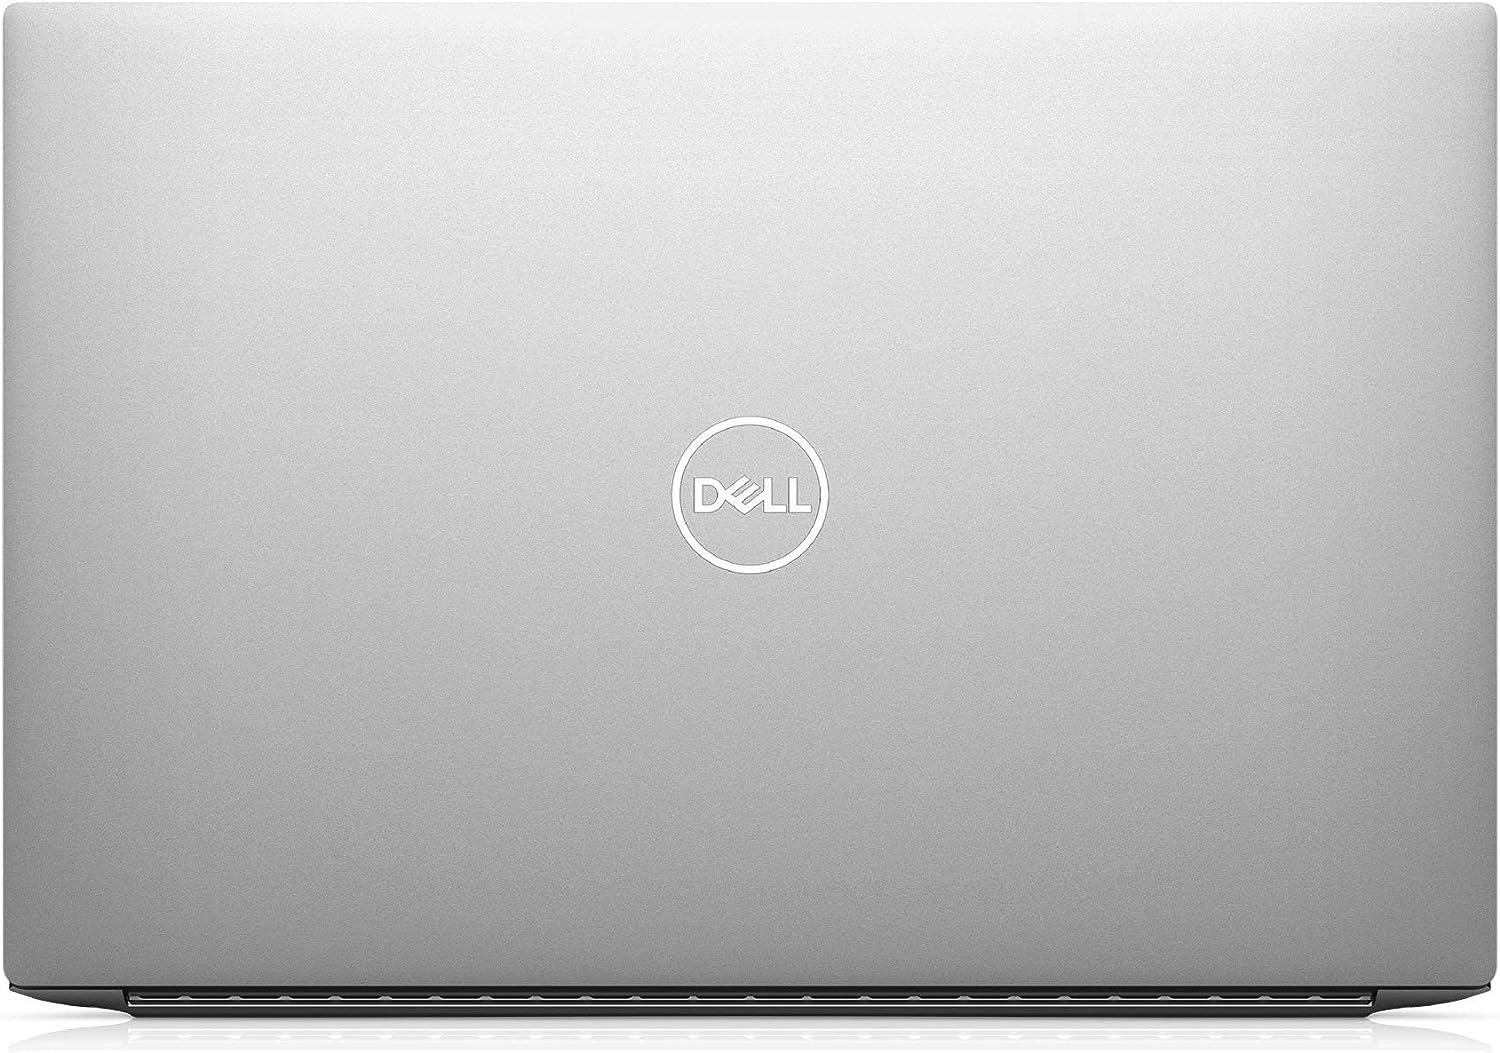 Dell XPS 15 9500 i7-10875H Ram 16GB SSD 512GB VGA rời Nvidia GeForce GTX 1650 Ti Màn hình 15.6 Inch IPS